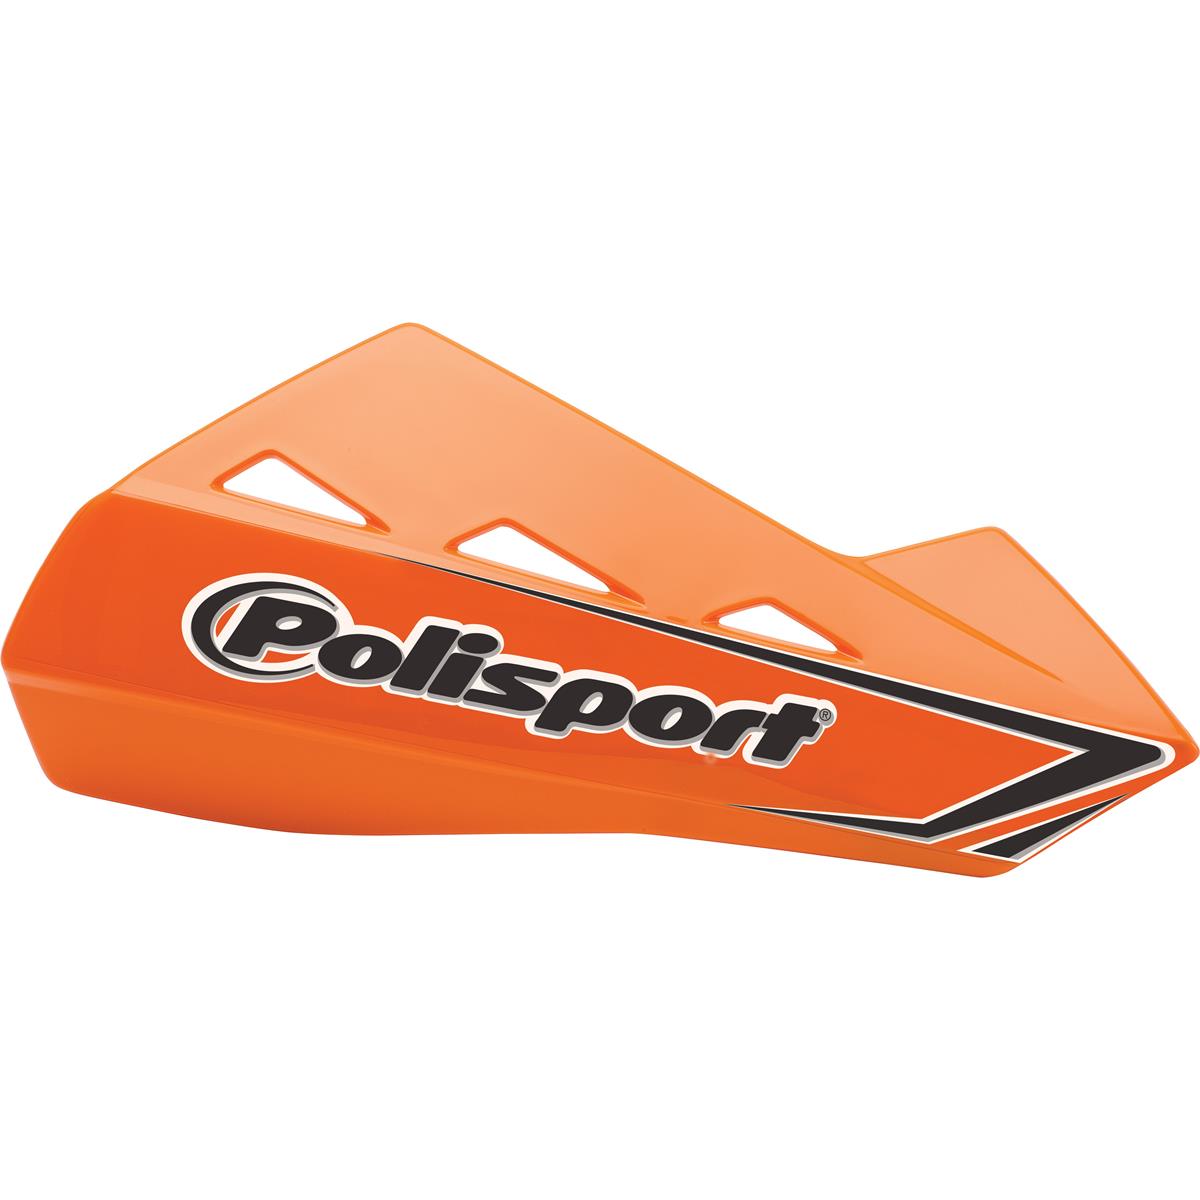 Polisport Handguards Qwest with Aluminium Mounting Kit, Orange